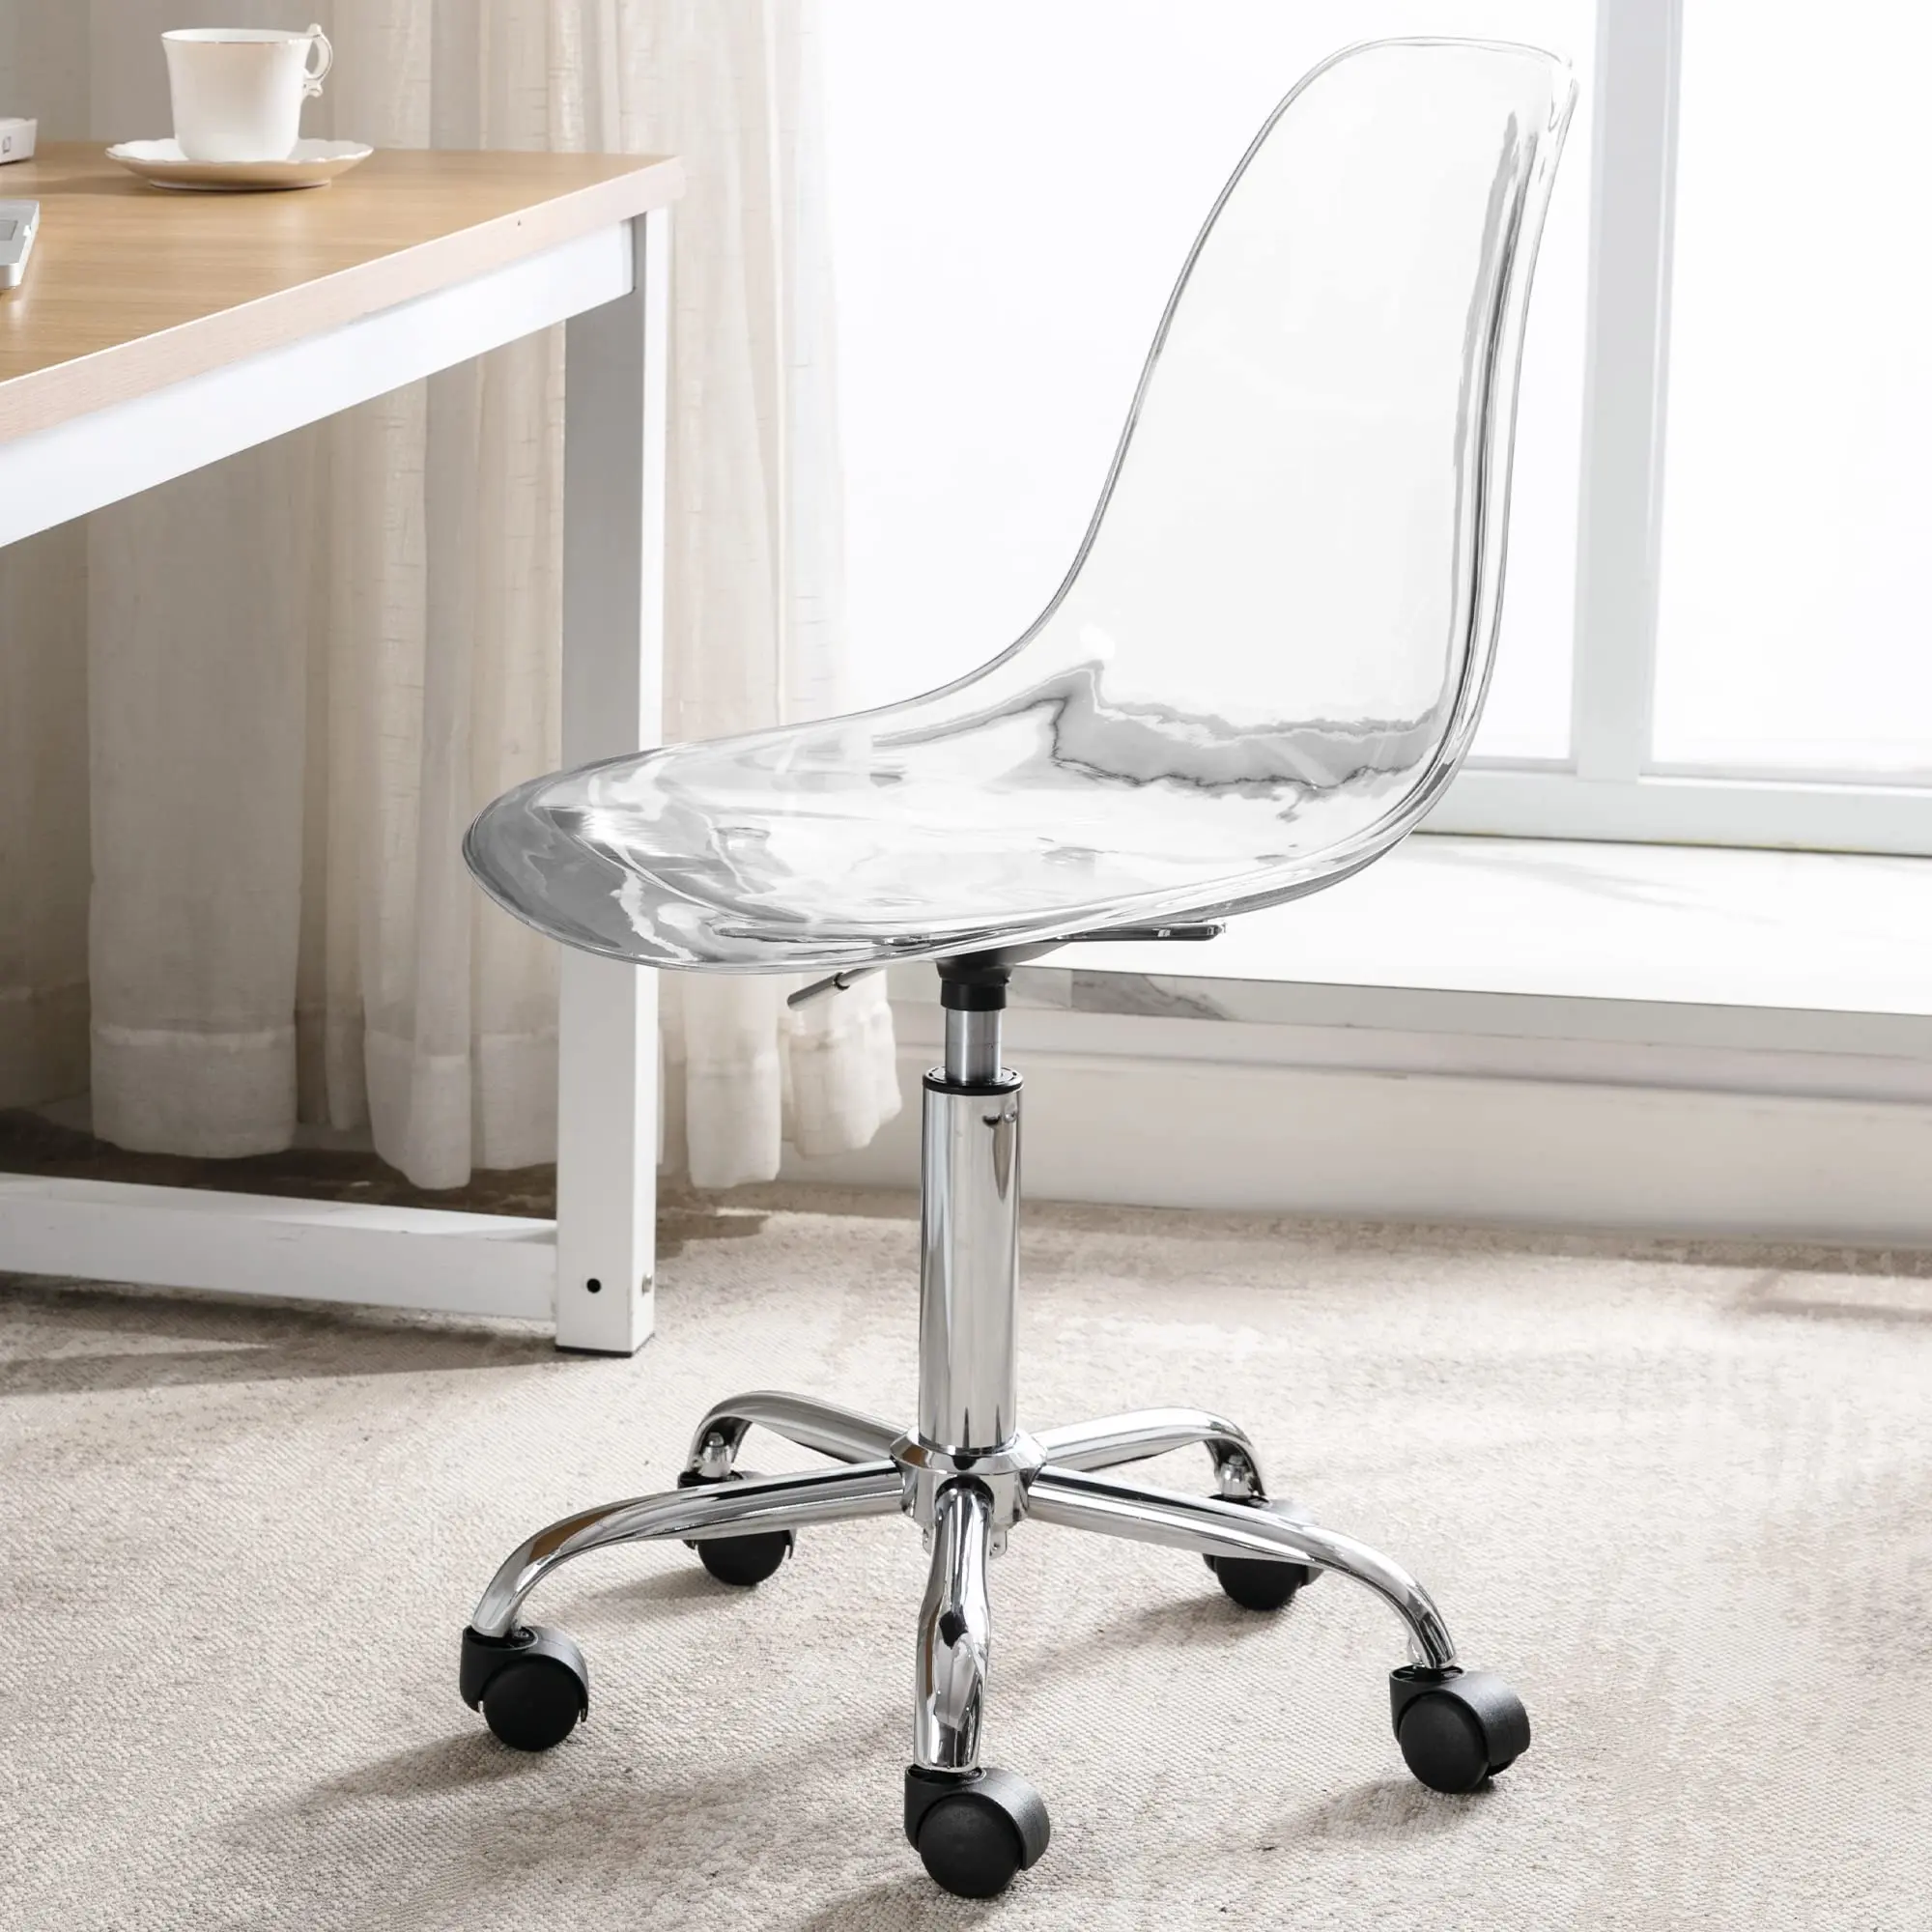 sillas acrilico oficinas - Cómo se les llama a las sillas de oficina